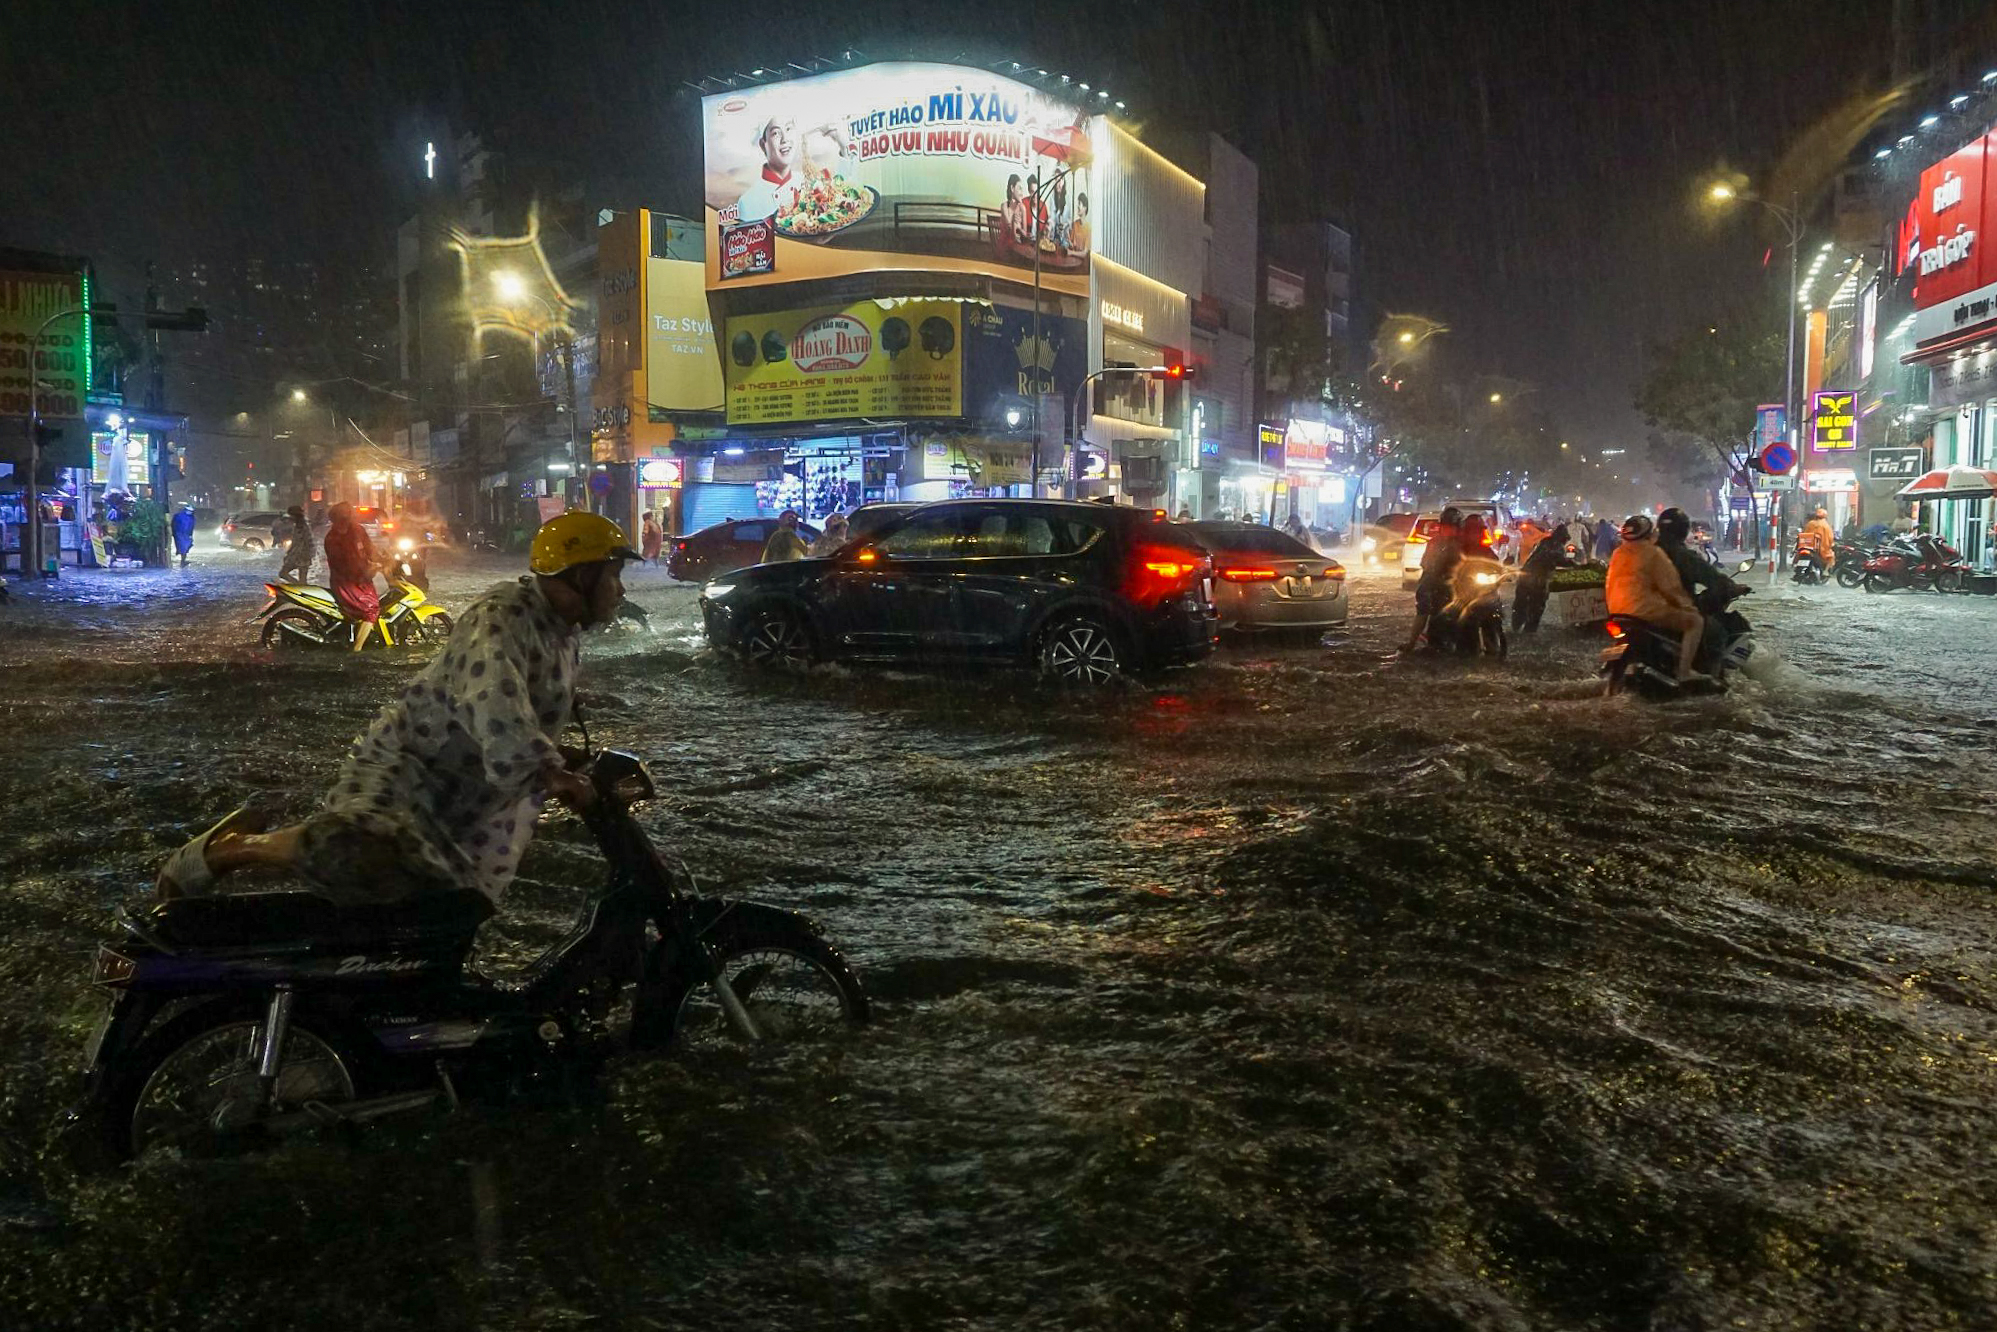 Đường phố Đà Nẵng ngập cục bộ sau mưa lớn, người dân chật vật lội nước về nhà - Ảnh 1.